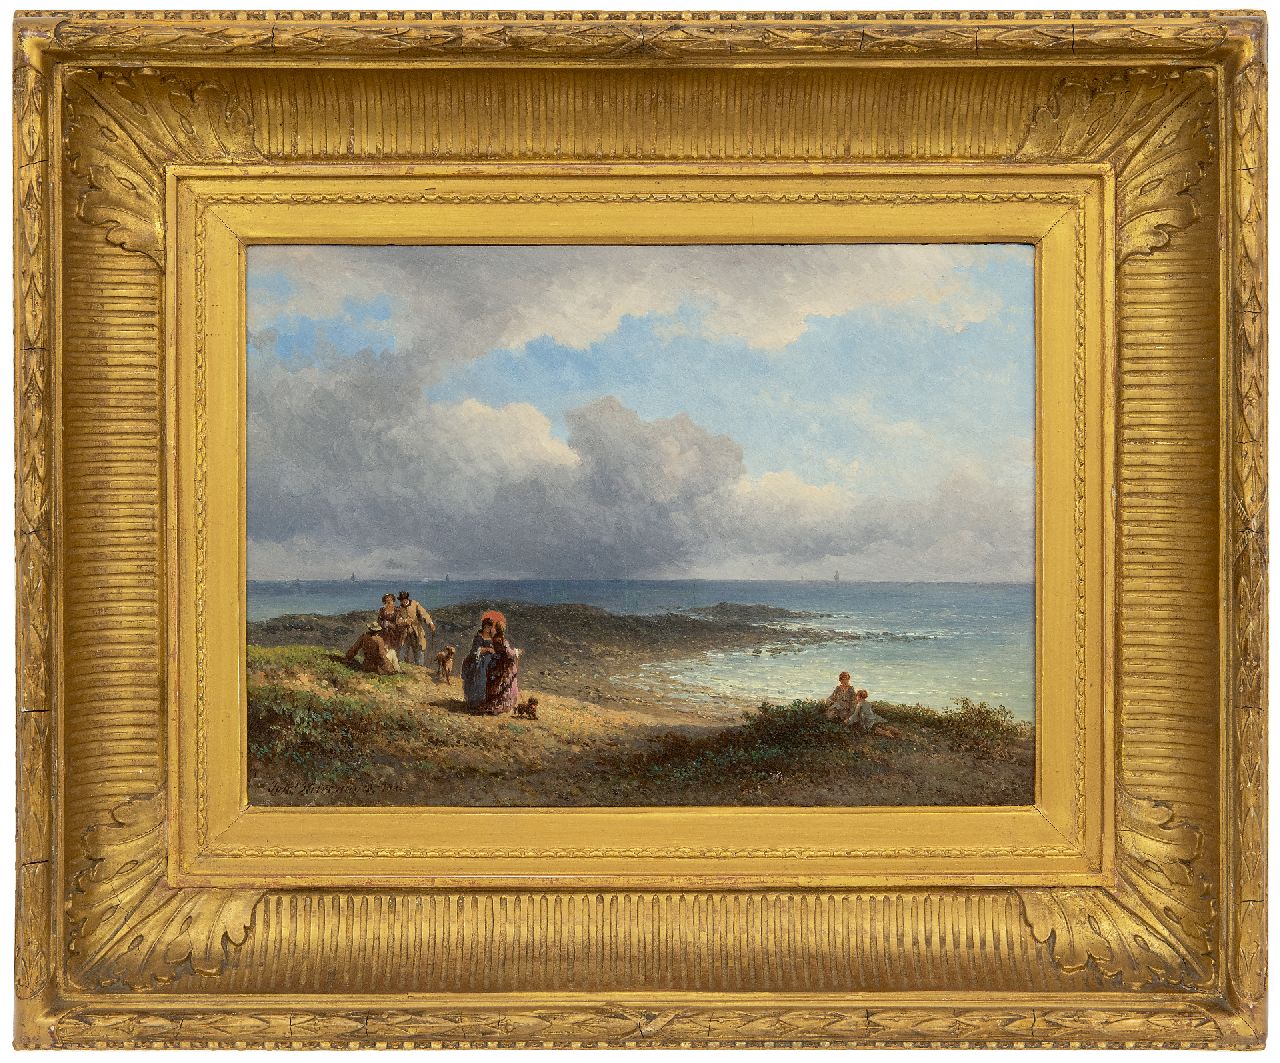 Hilverdink J.  | Johannes Hilverdink | Schilderijen te koop aangeboden | Elegante wandelaars aan de Franse kust, olieverf op paneel 23,6 x 34,2 cm, gesigneerd linksonder en gedateerd 1873